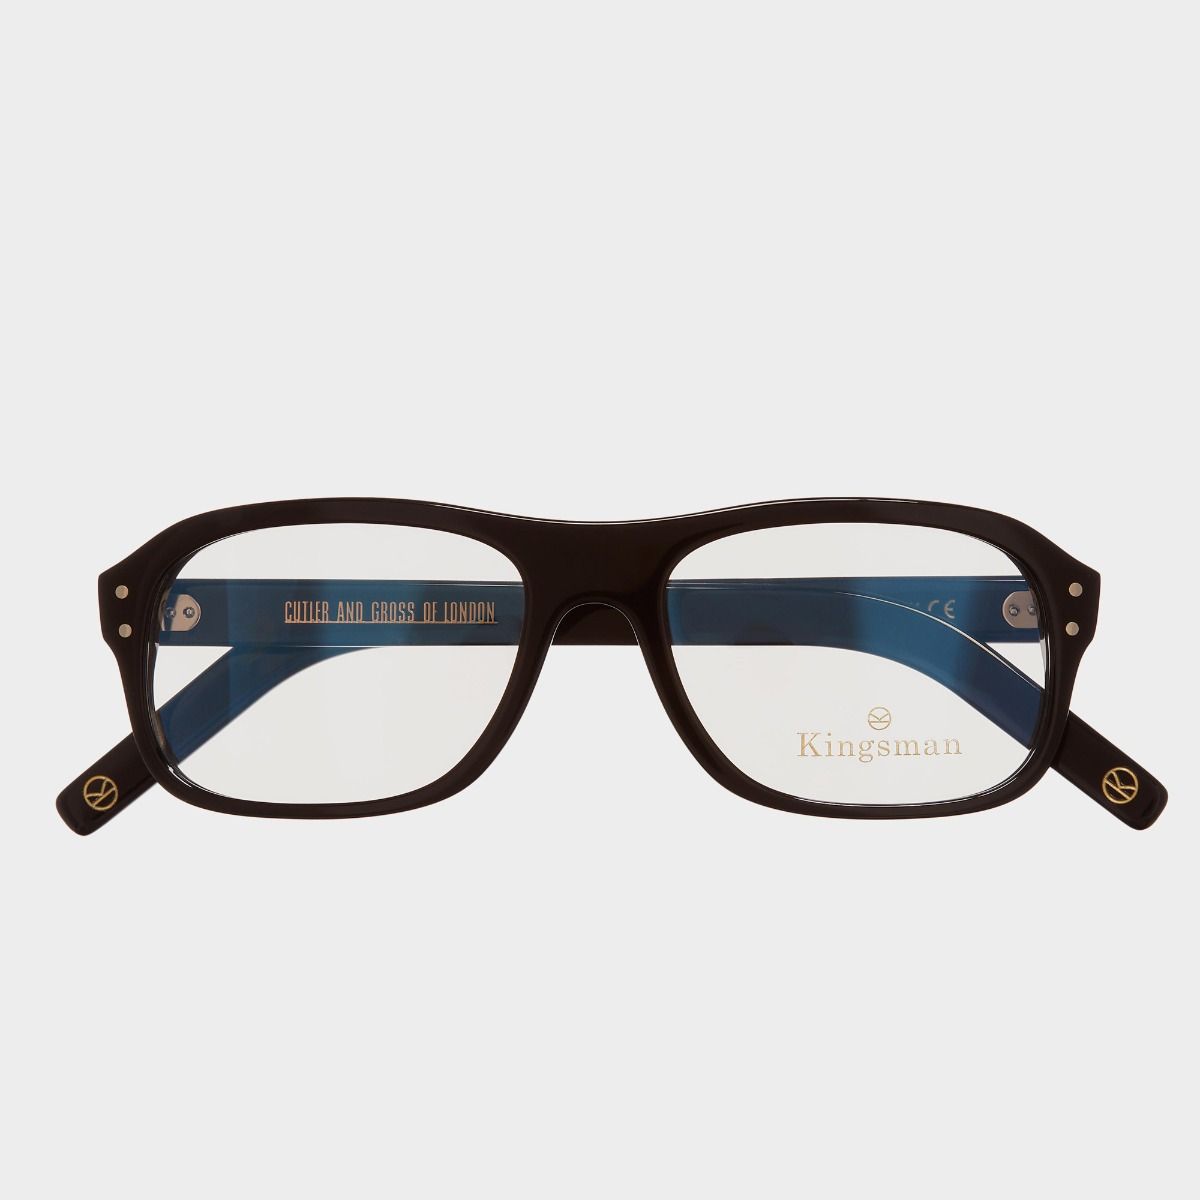 Cutler and Gross, 0847V2 Kingsman Optical Aviator Glasses - Black